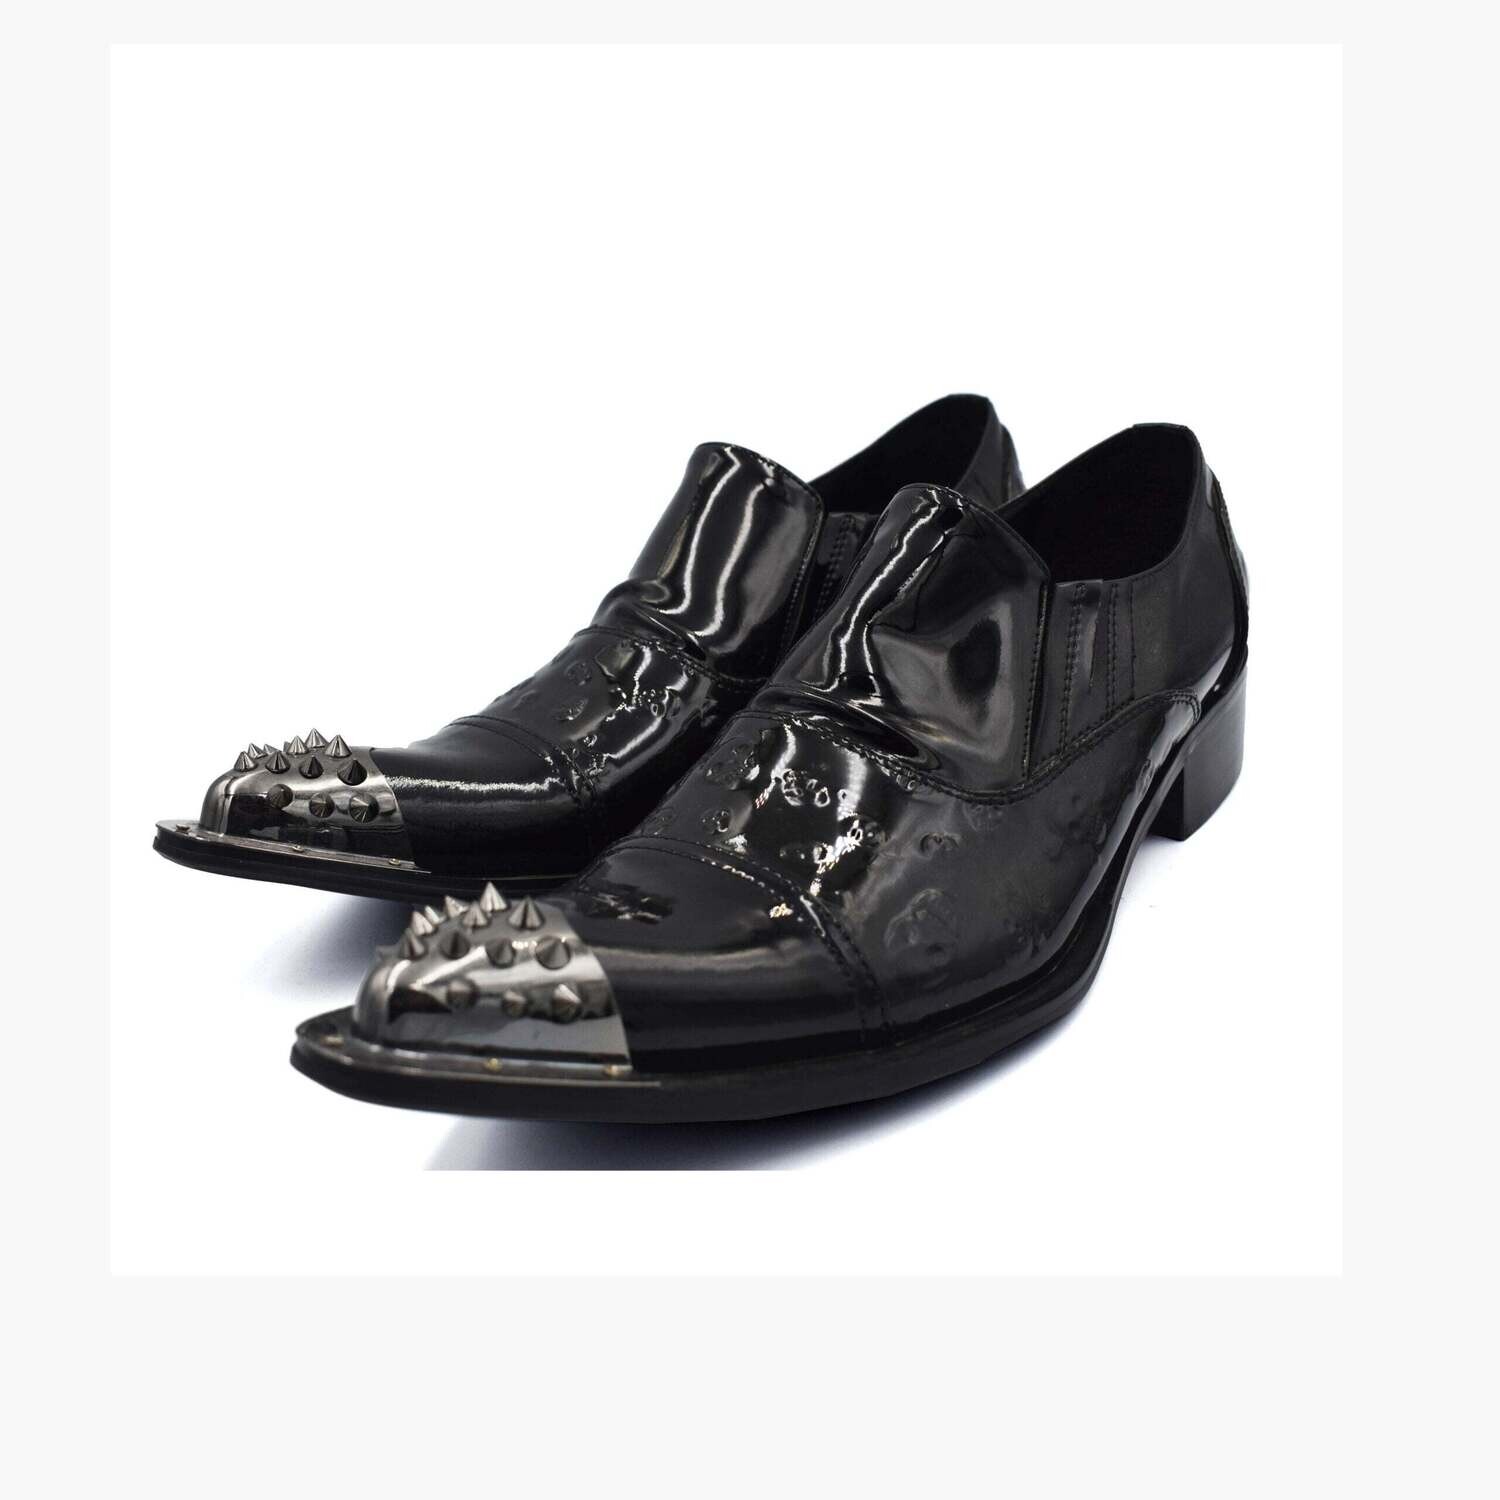 Cavana party shoes for men